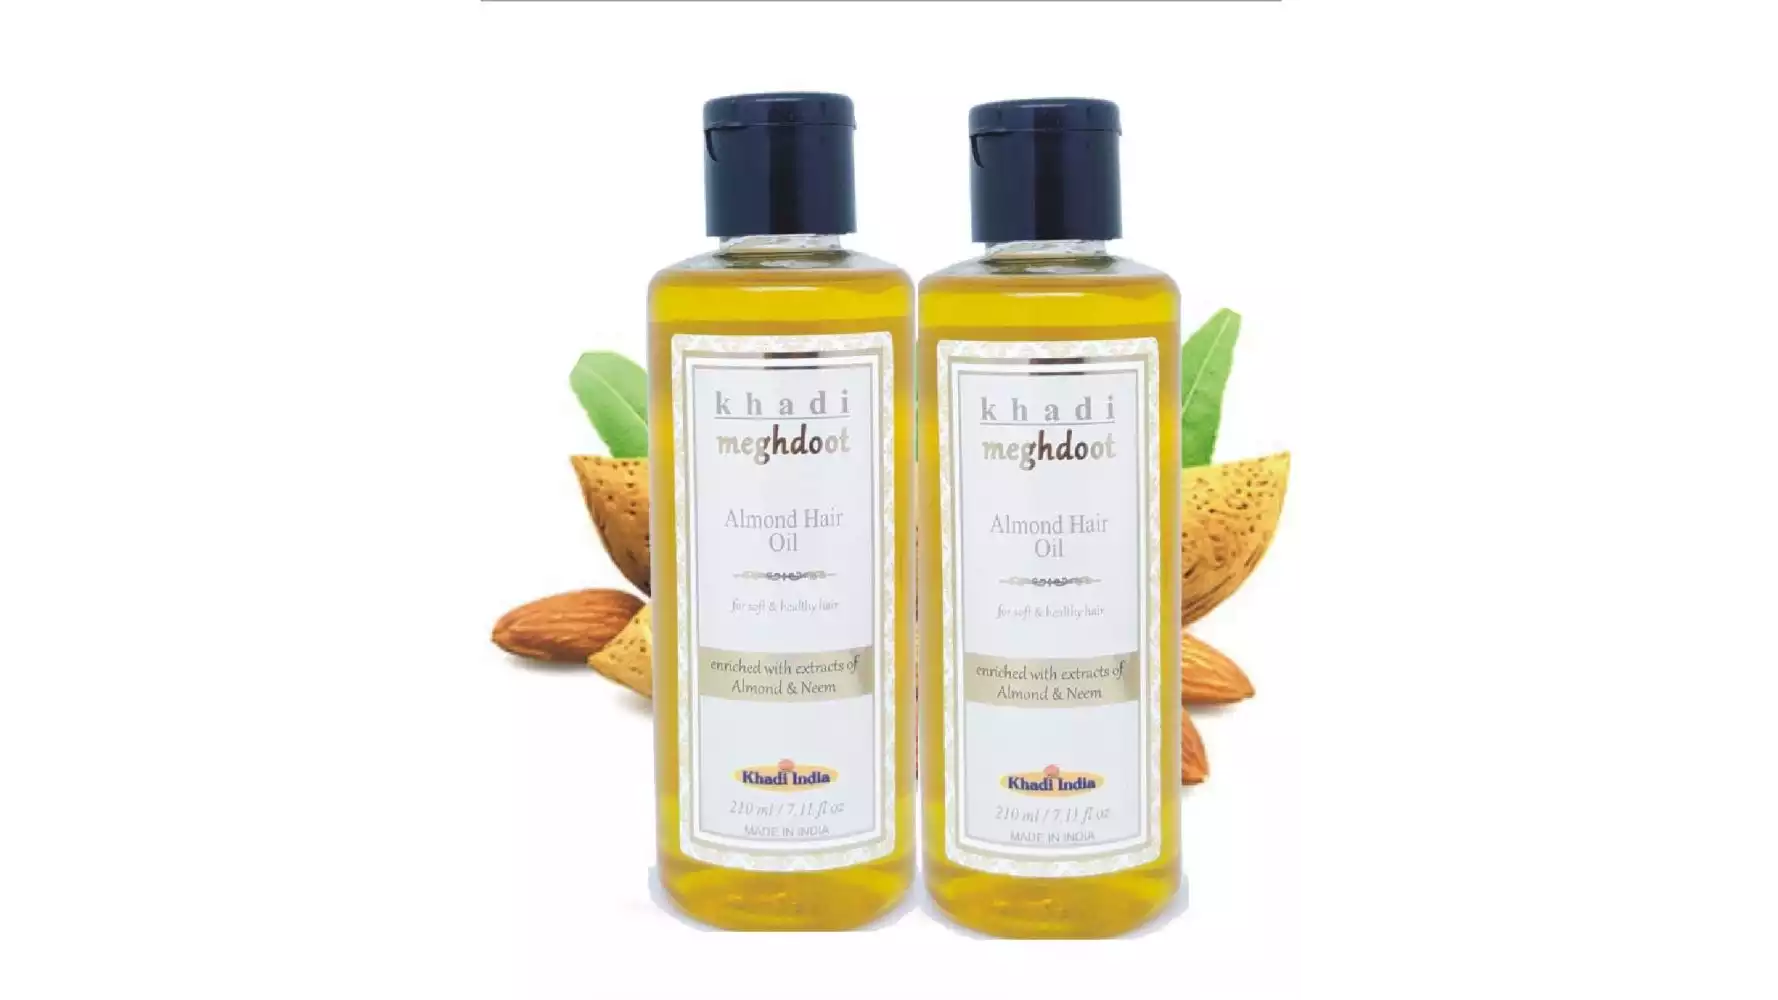 Khadi Meghdoot Almond Hair Oil (210ml, Pack of 2)